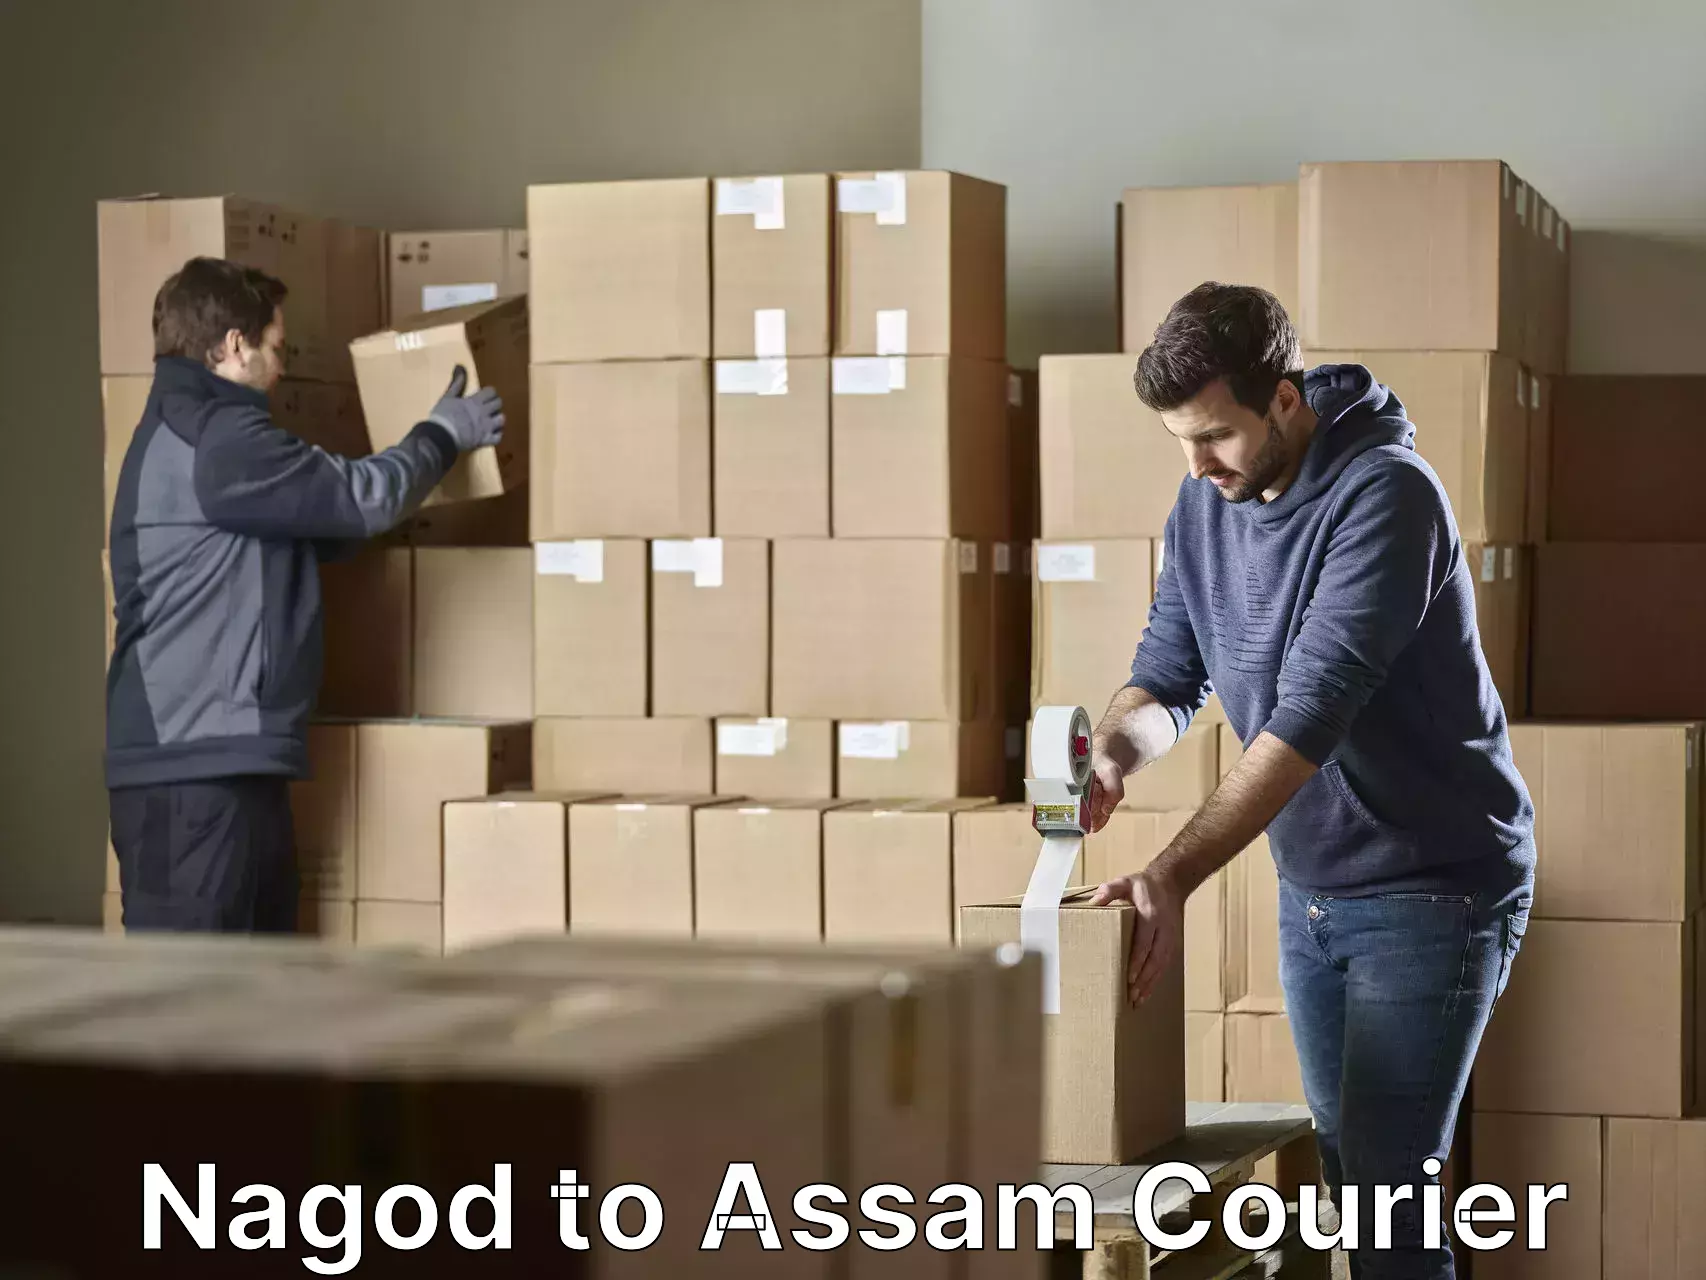 Furniture transport specialists Nagod to Assam